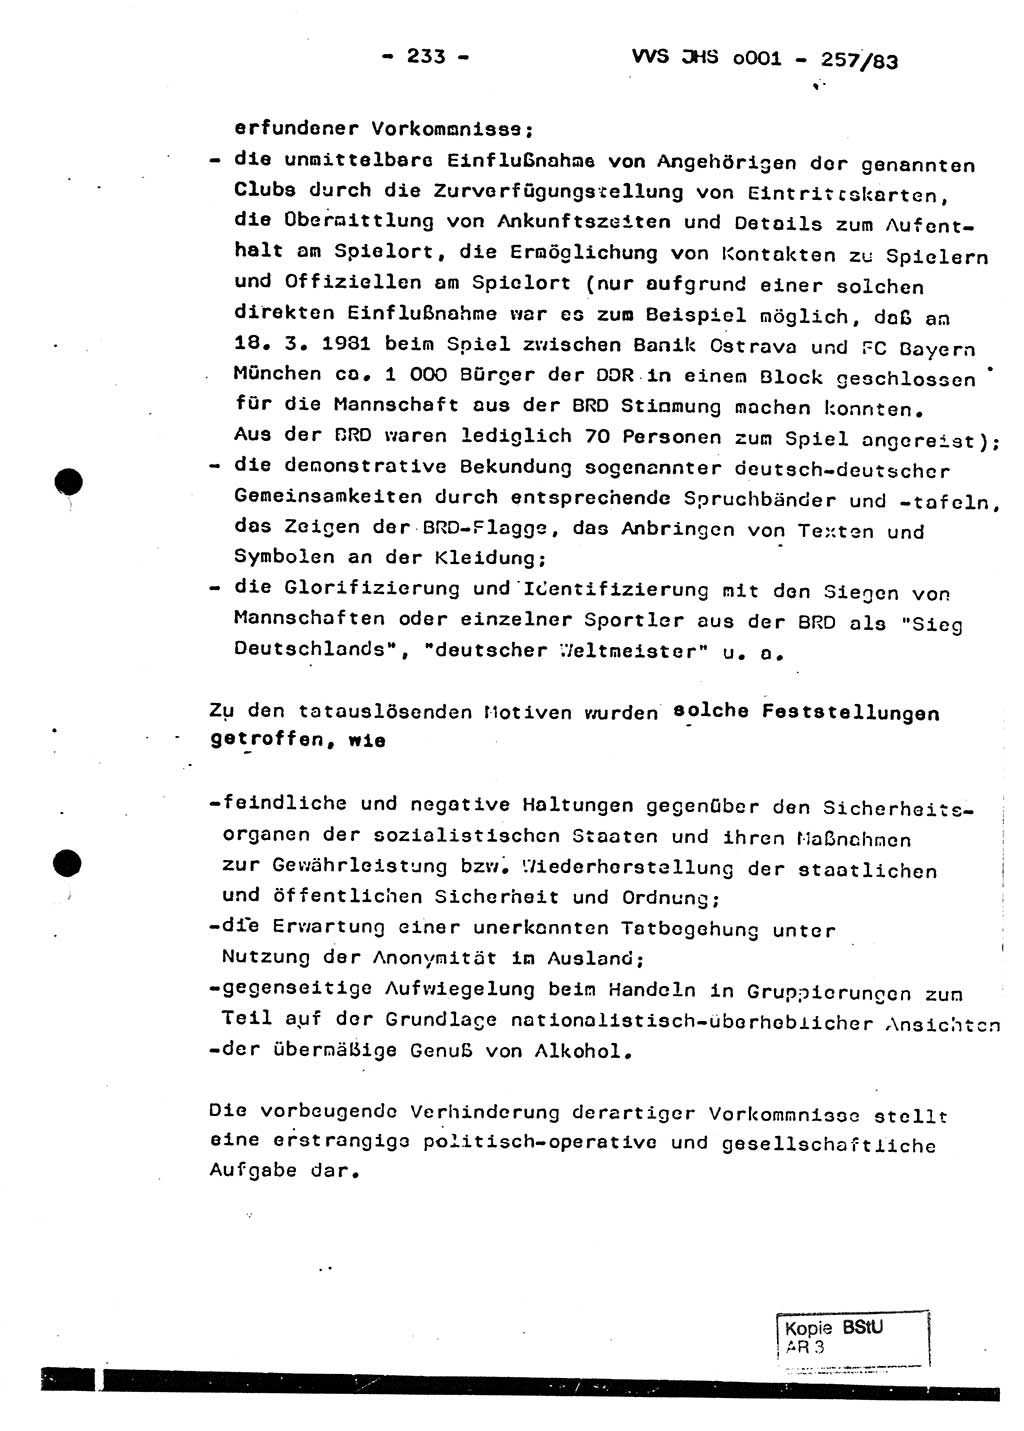 Dissertation, Oberst Helmut Lubas (BV Mdg.), Oberstleutnant Manfred Eschberger (HA IX), Oberleutnant Hans-Jürgen Ludwig (JHS), Ministerium für Staatssicherheit (MfS) [Deutsche Demokratische Republik (DDR)], Juristische Hochschule (JHS), Vertrauliche Verschlußsache (VVS) o001-257/83, Potsdam 1983, Seite 233 (Diss. MfS DDR JHS VVS o001-257/83 1983, S. 233)